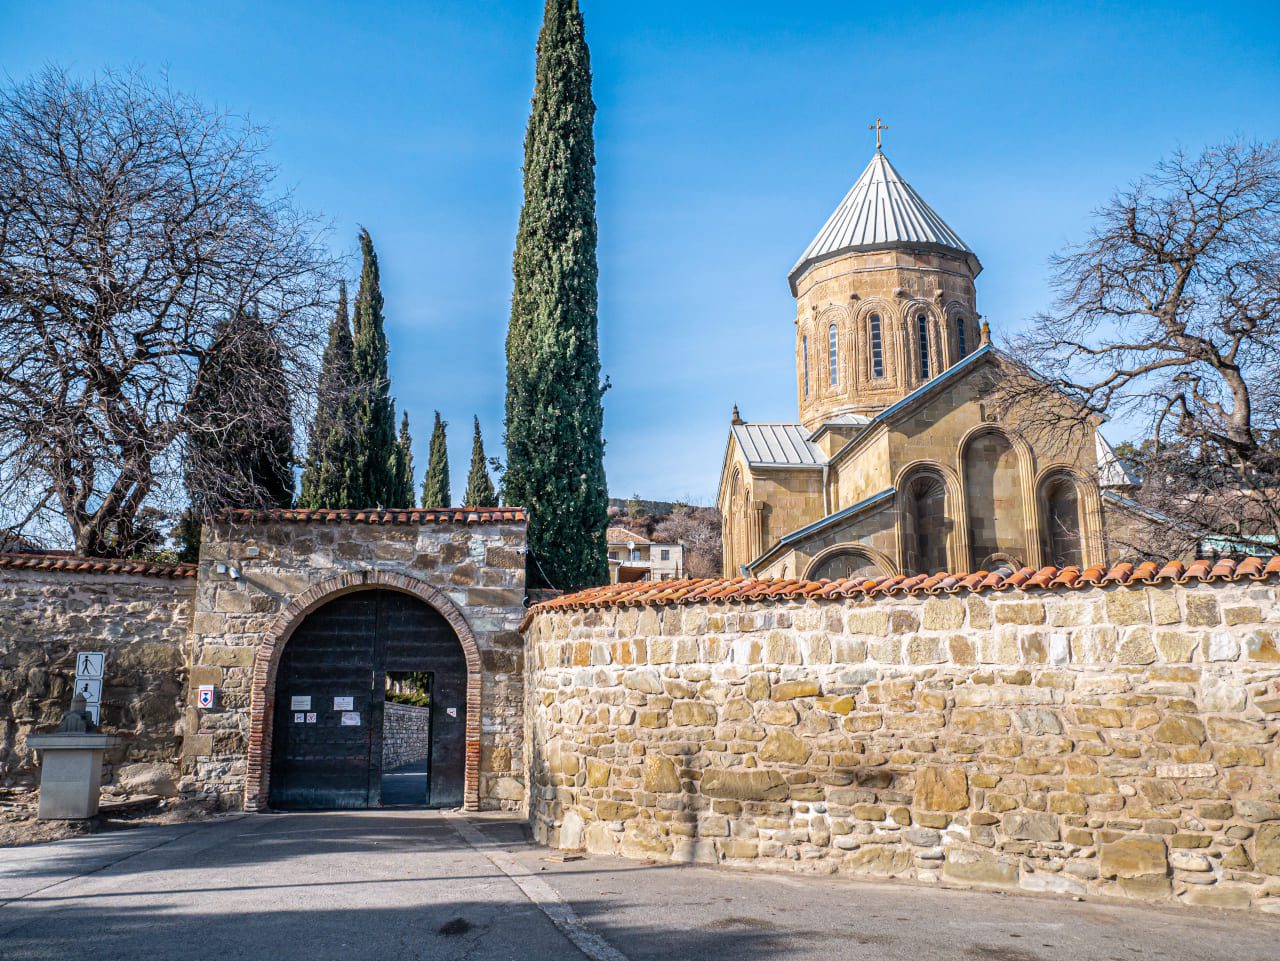 Gruzja klasztor Samtavro wejście na dziedziniec